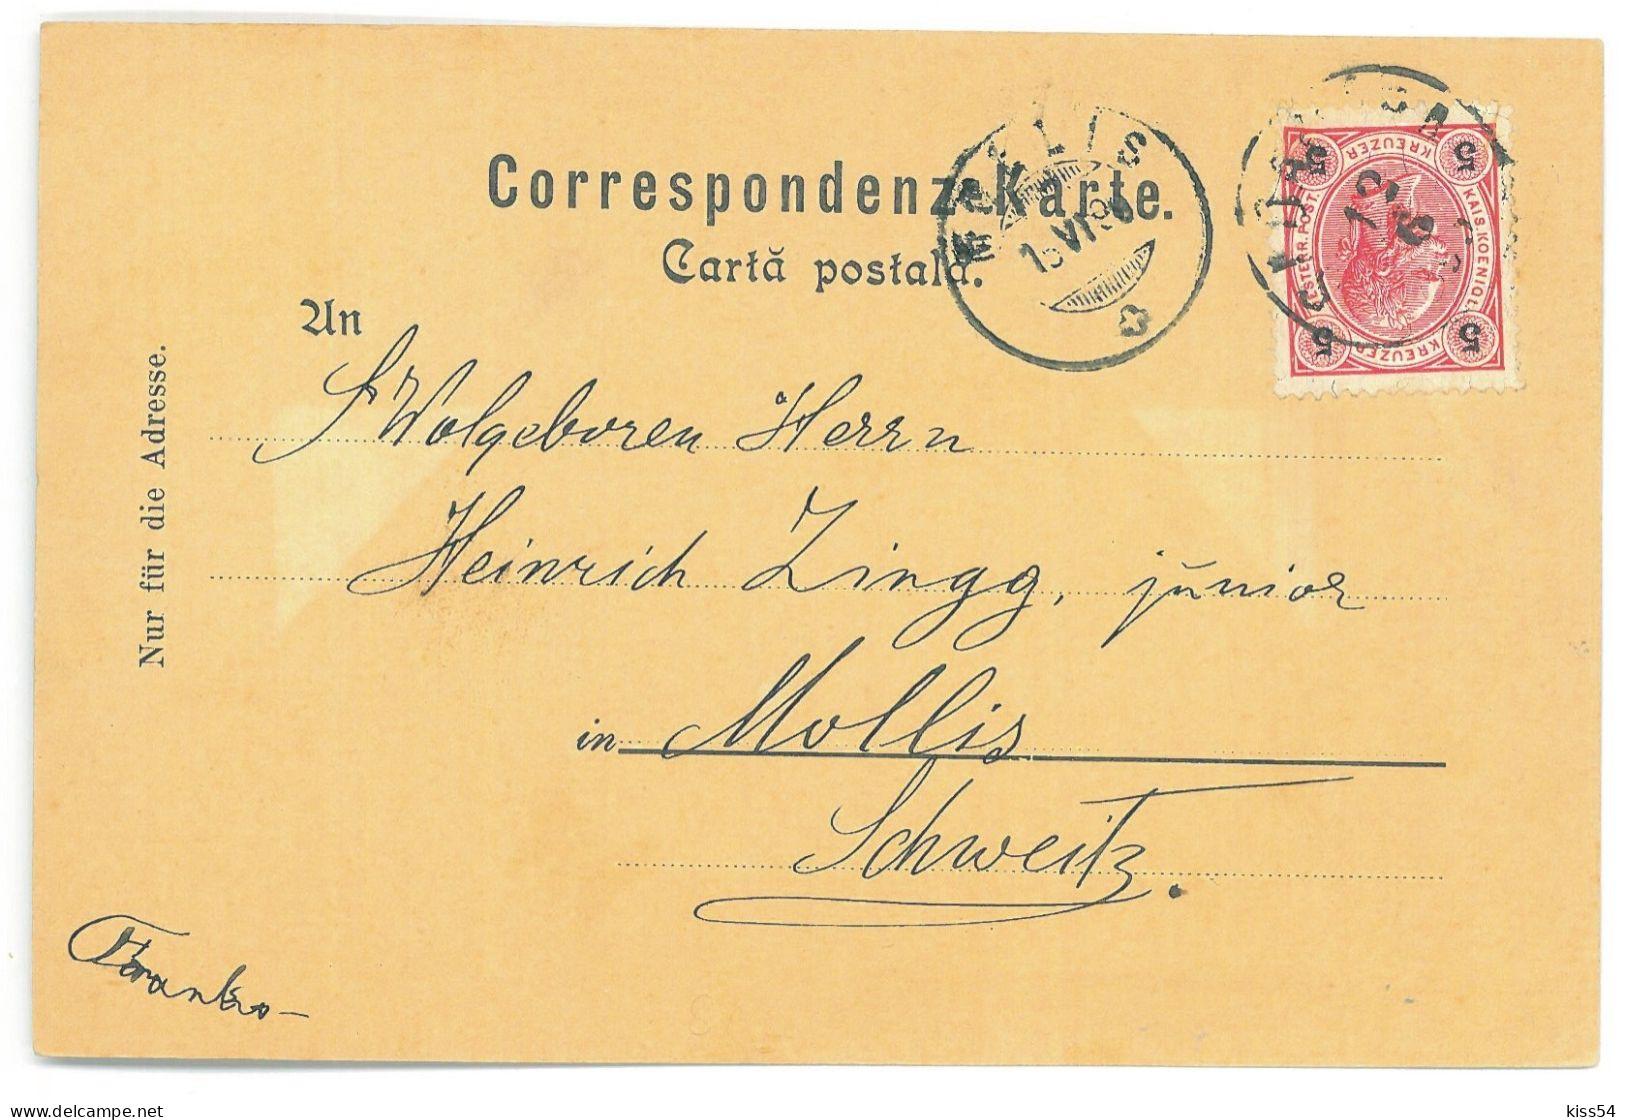 RO - 25327 SADAGURA, Bucovina, High School, Litho, Romania - Old Postcard - Used - 1898 - Roumanie